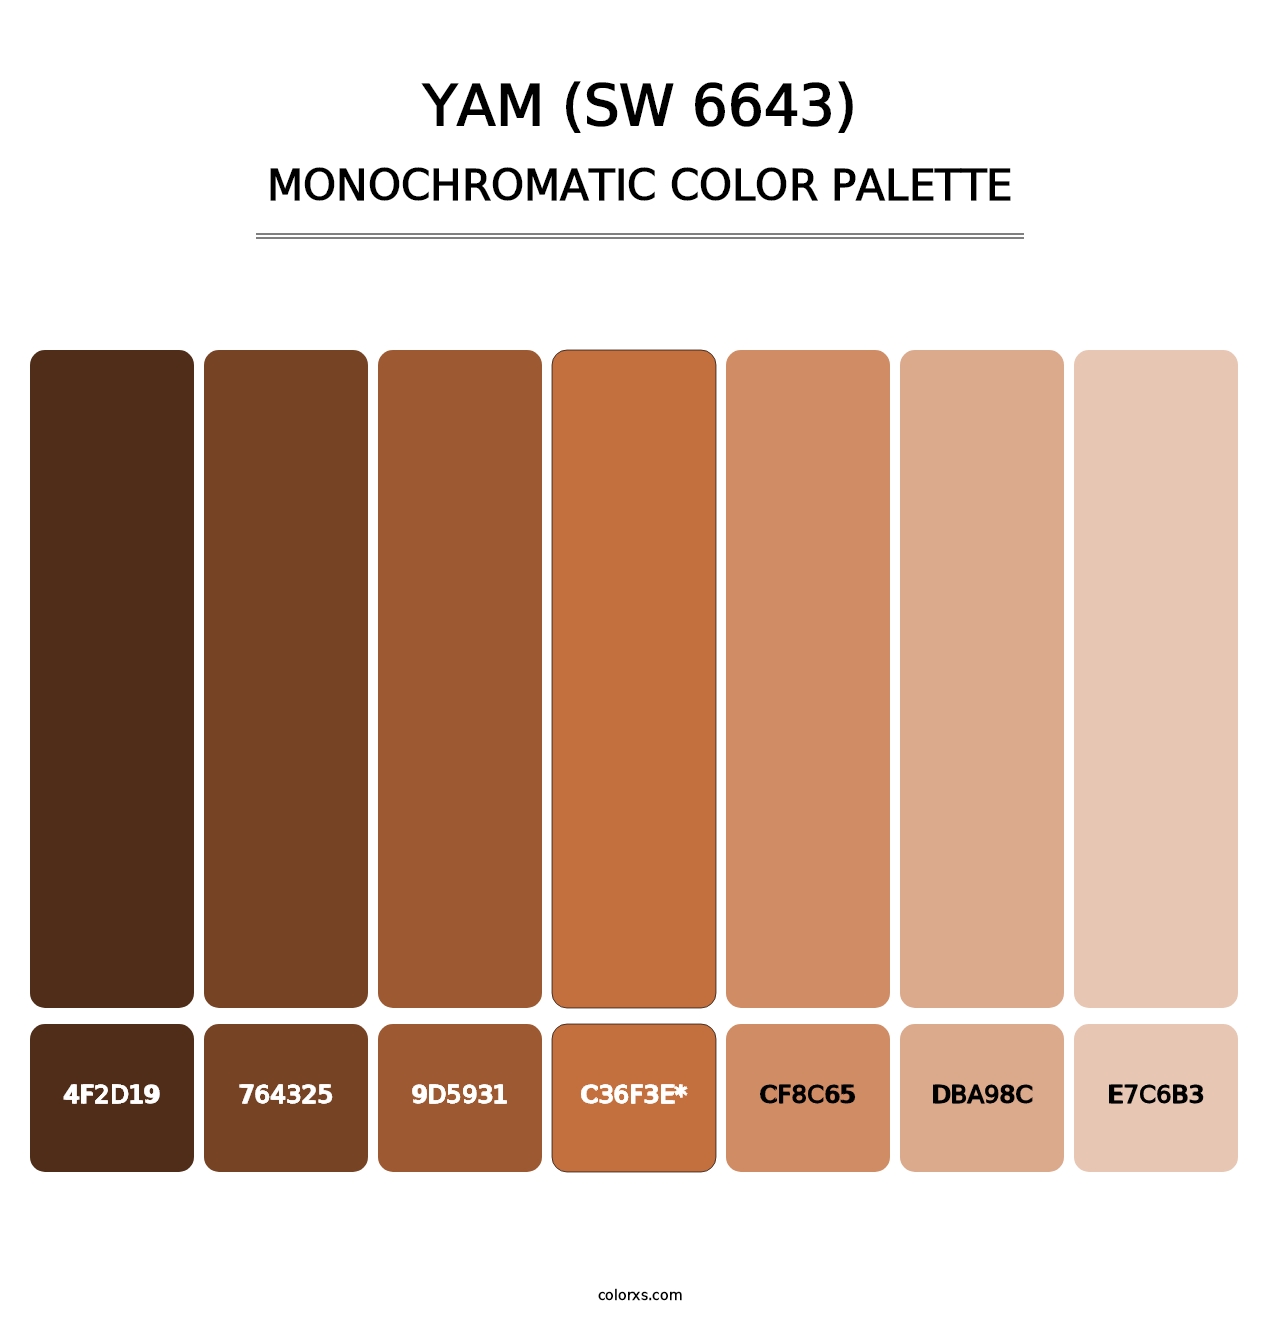 Yam (SW 6643) - Monochromatic Color Palette